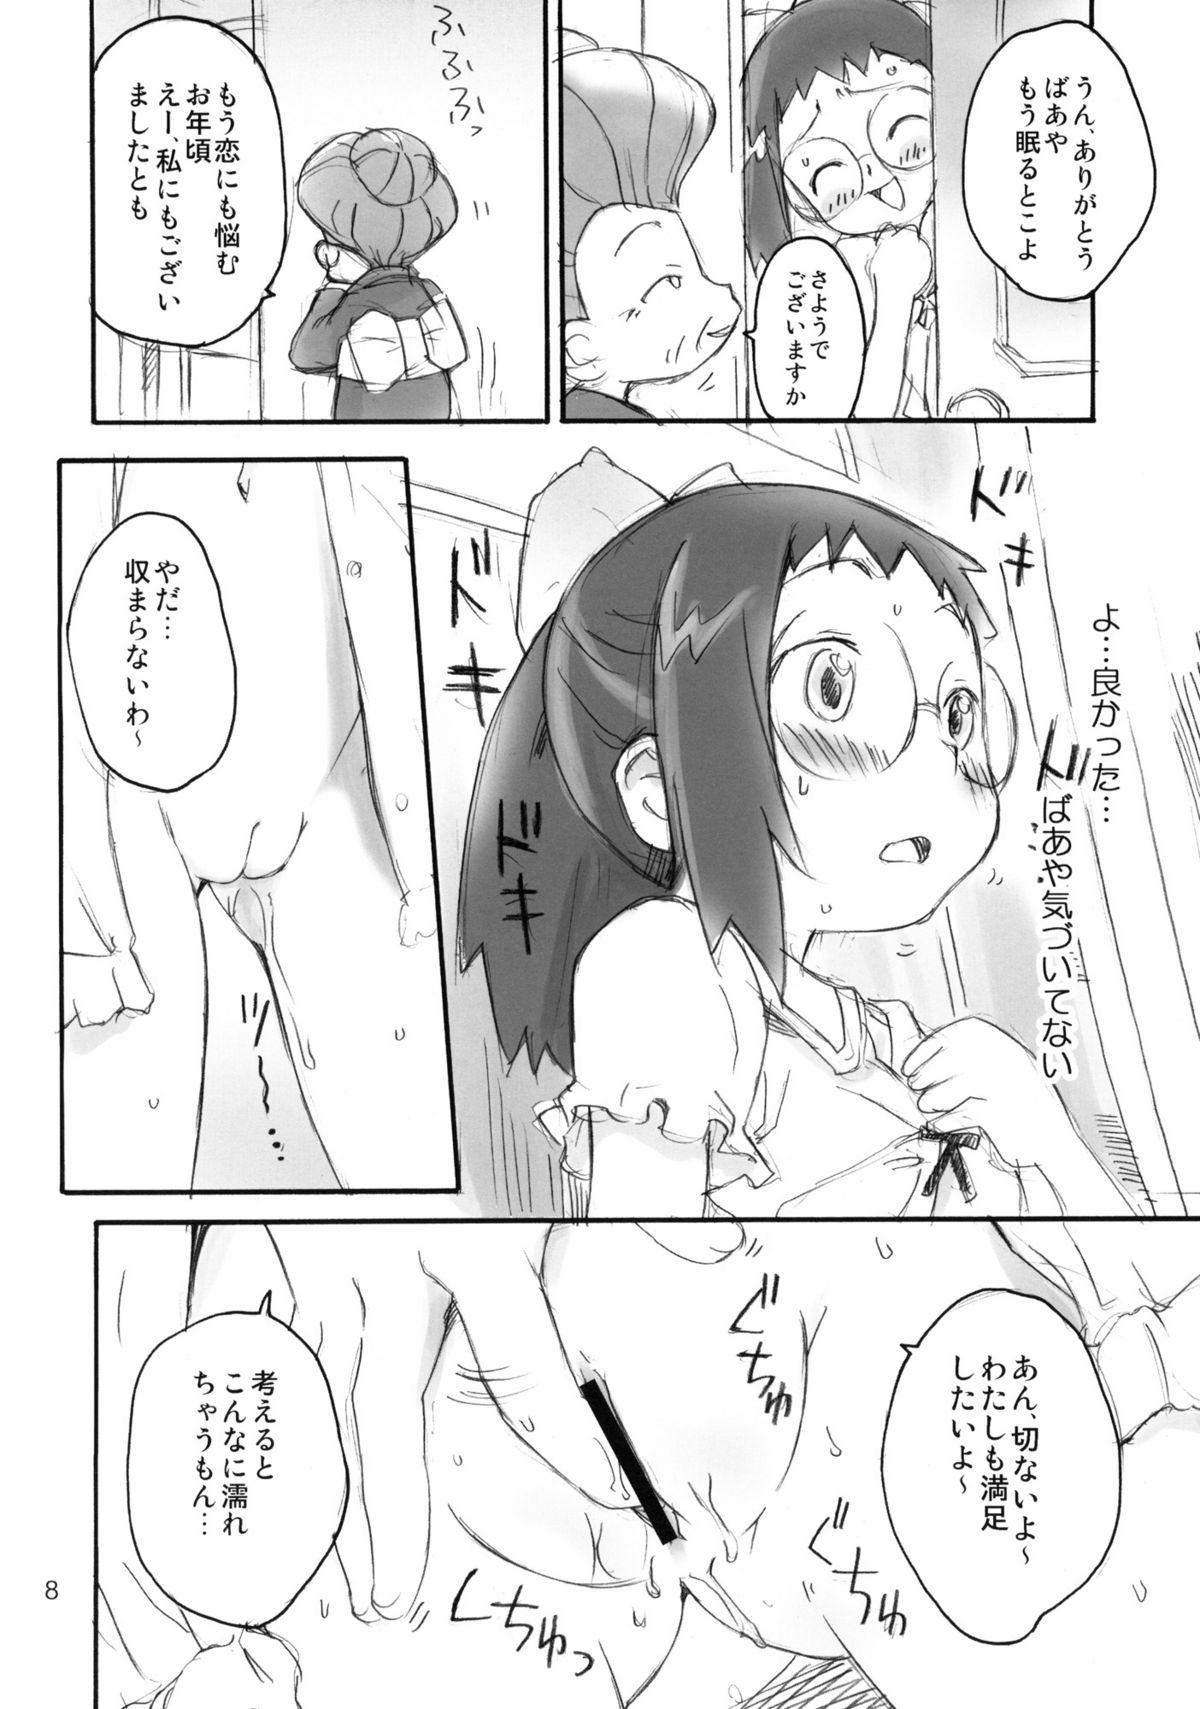 Stroking Watashi no G-kan - Ojamajo doremi Teenage Sex - Page 7